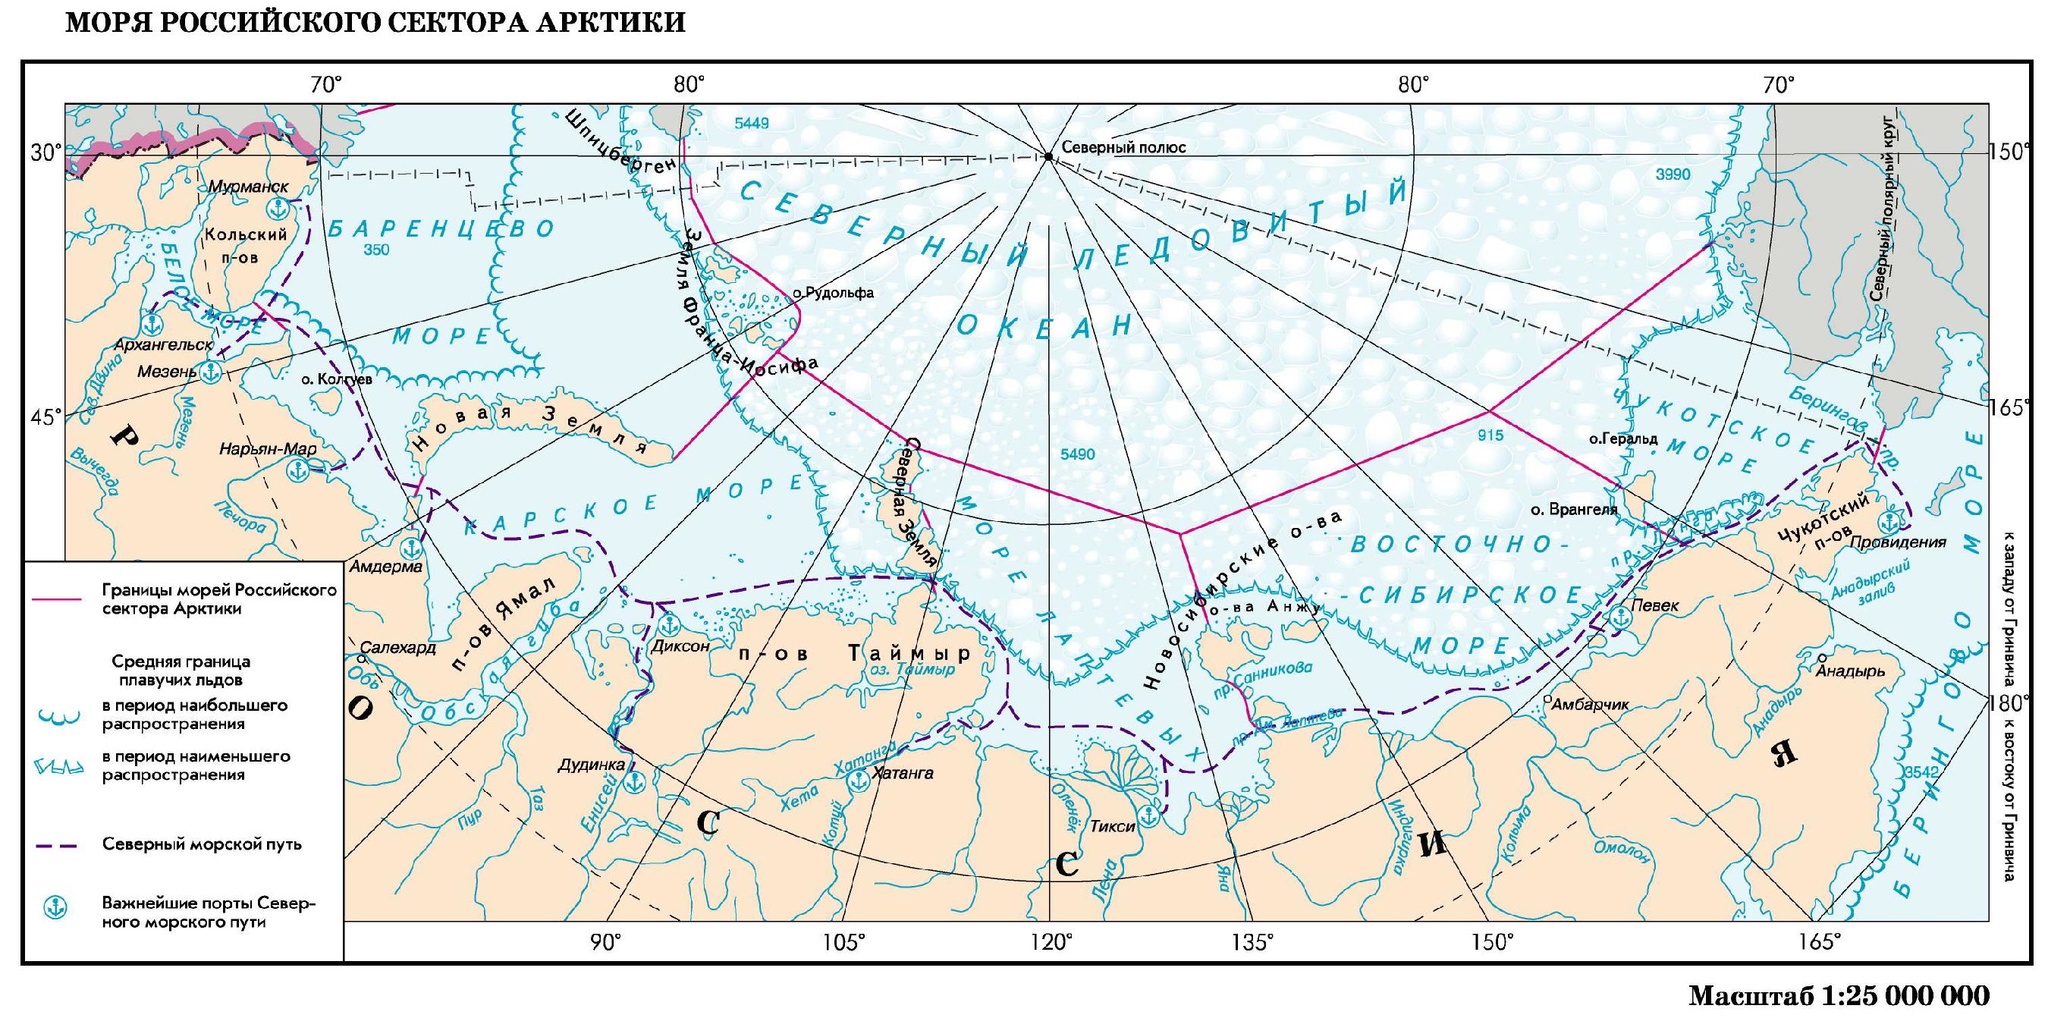 Северный морской путь на карте границы РФ. Арктика Северный морской путь на карте. Граница российского сектора Арктики. Морская граница России в Северном Ледовитом океане на карте. Северный океан протяженность